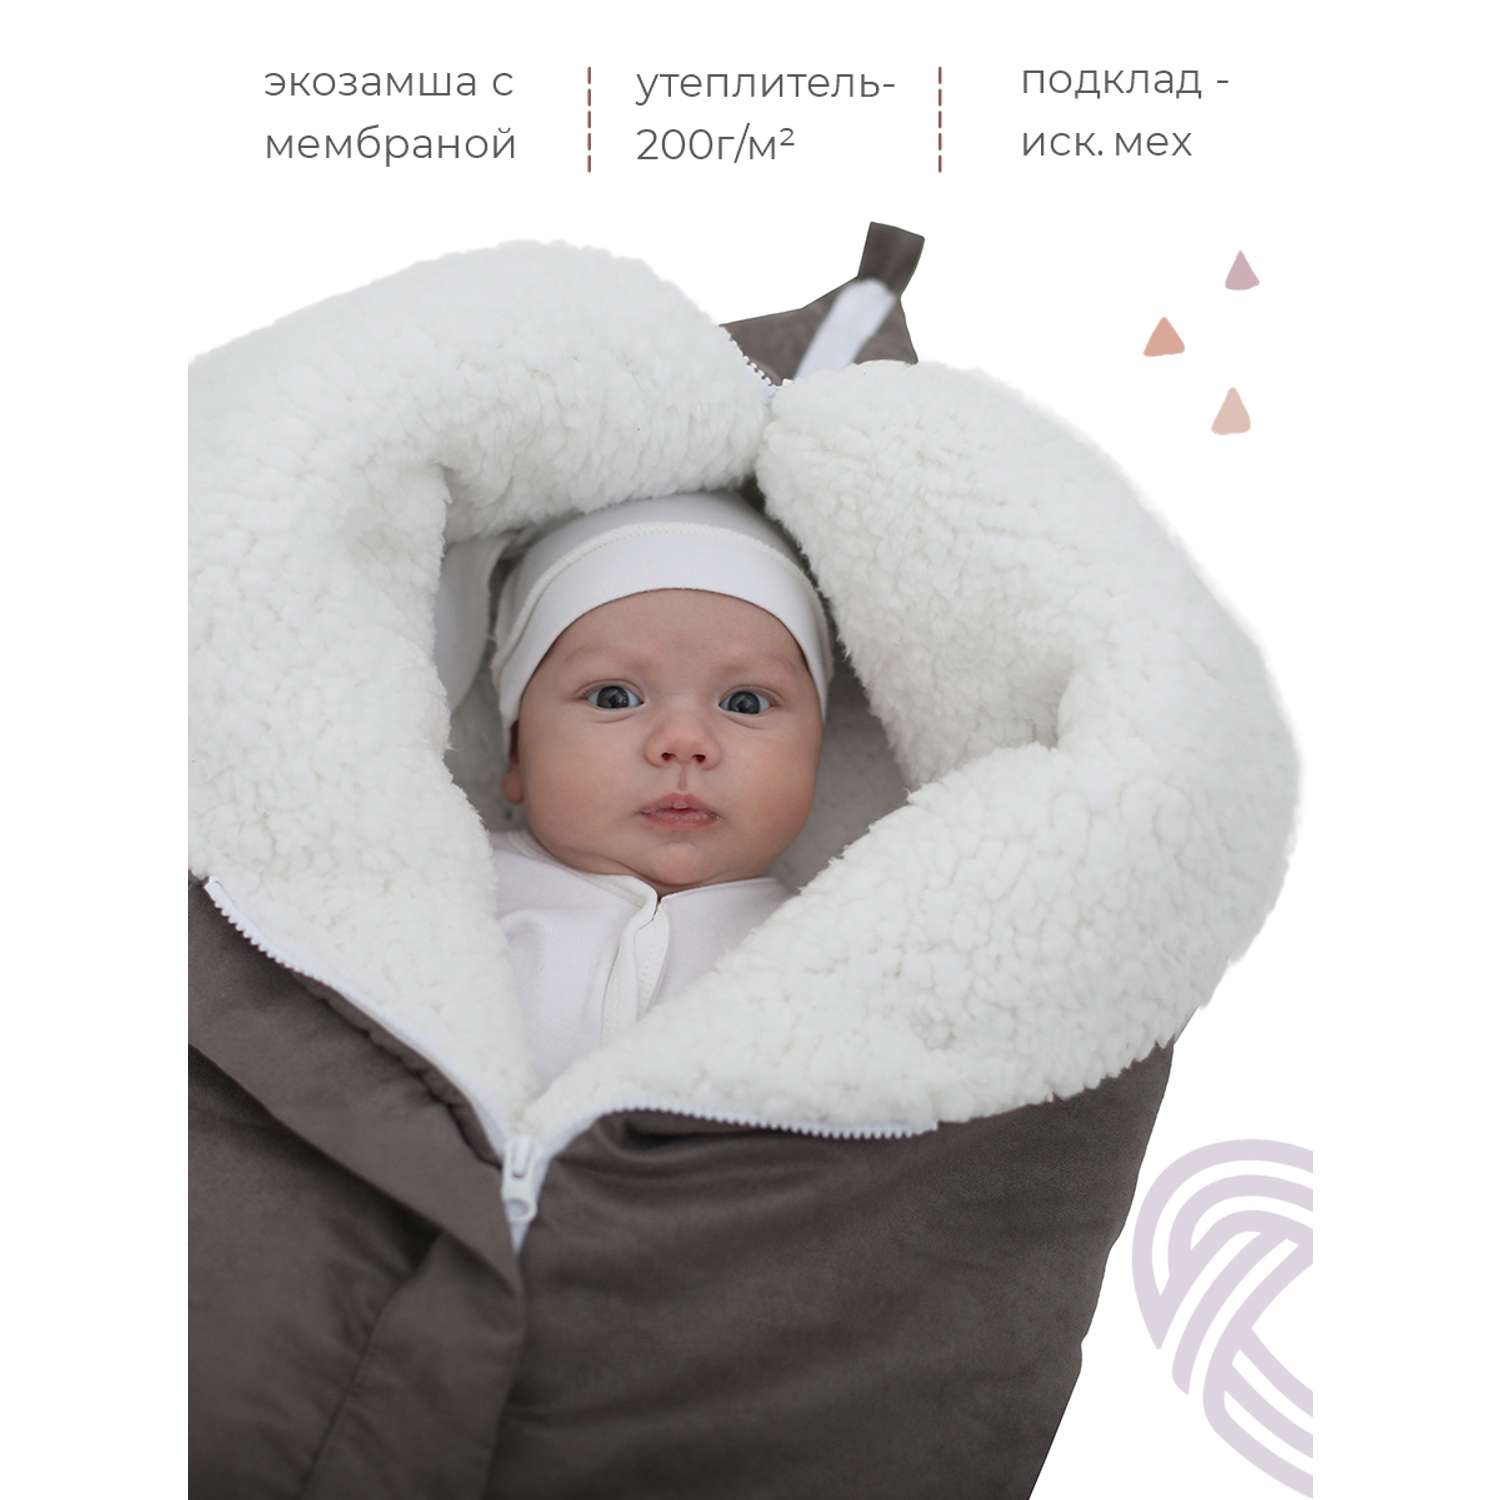 Конверт в коляску inlovery для новорожденного «Нортес» серый - фото 3